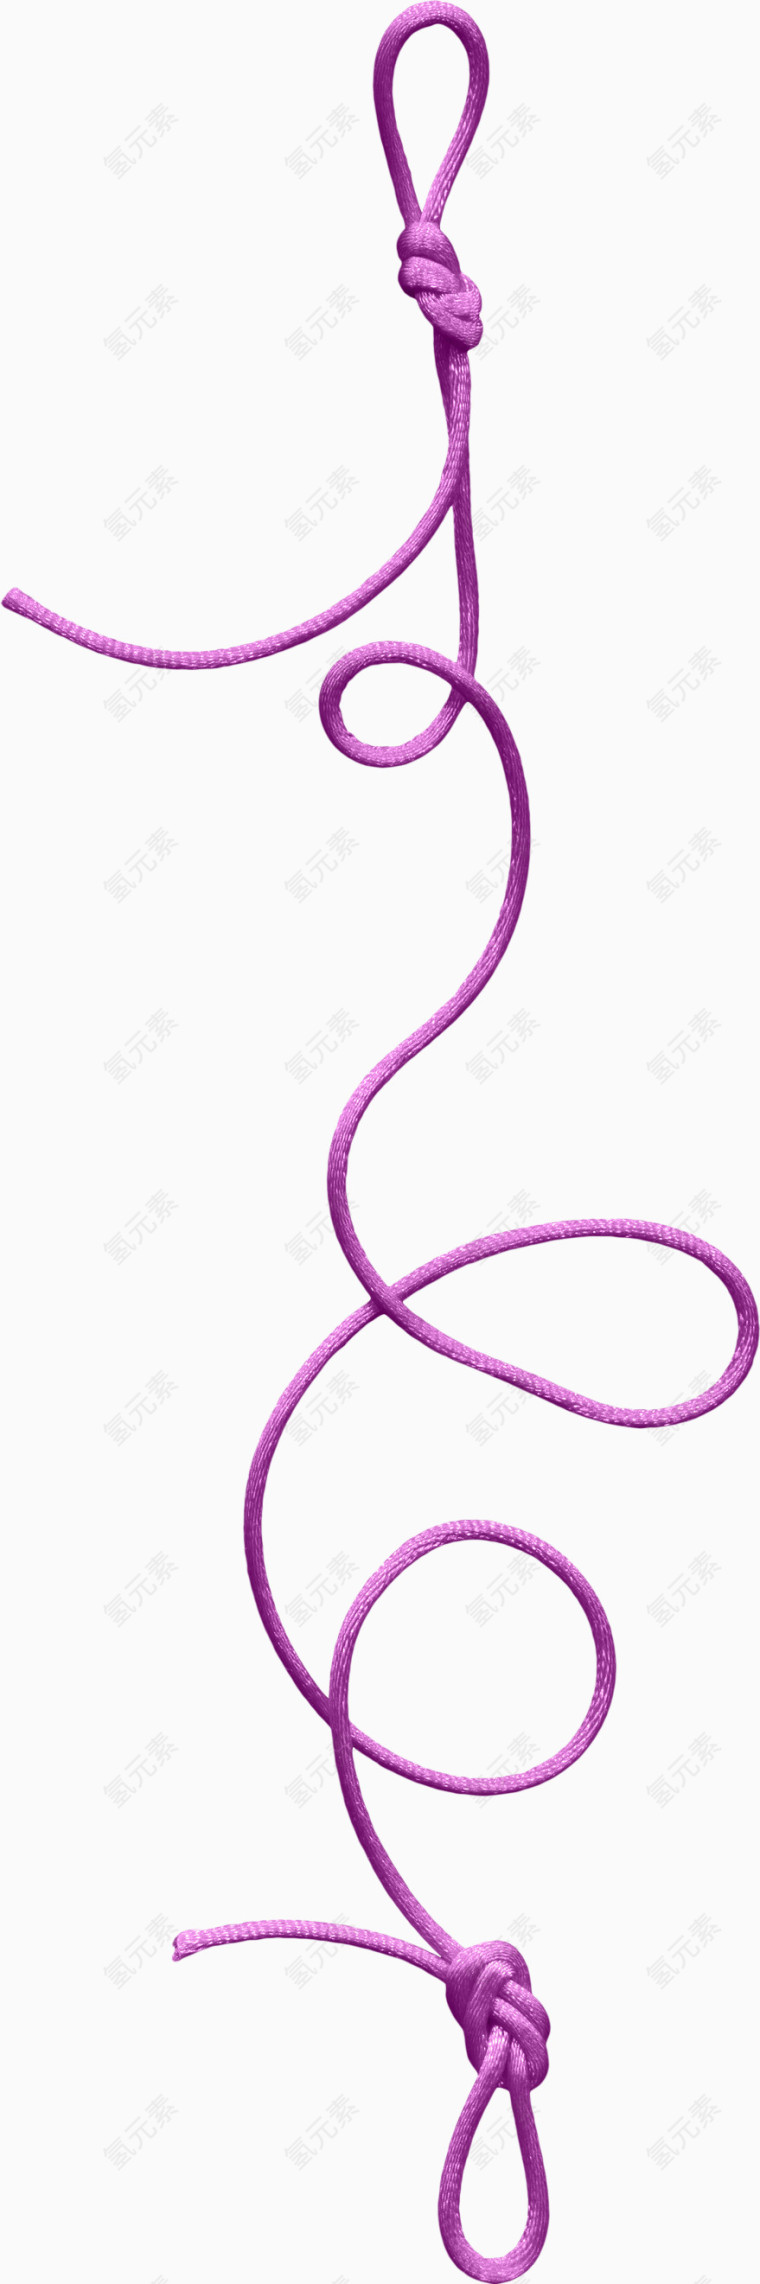 紫色打结绳子